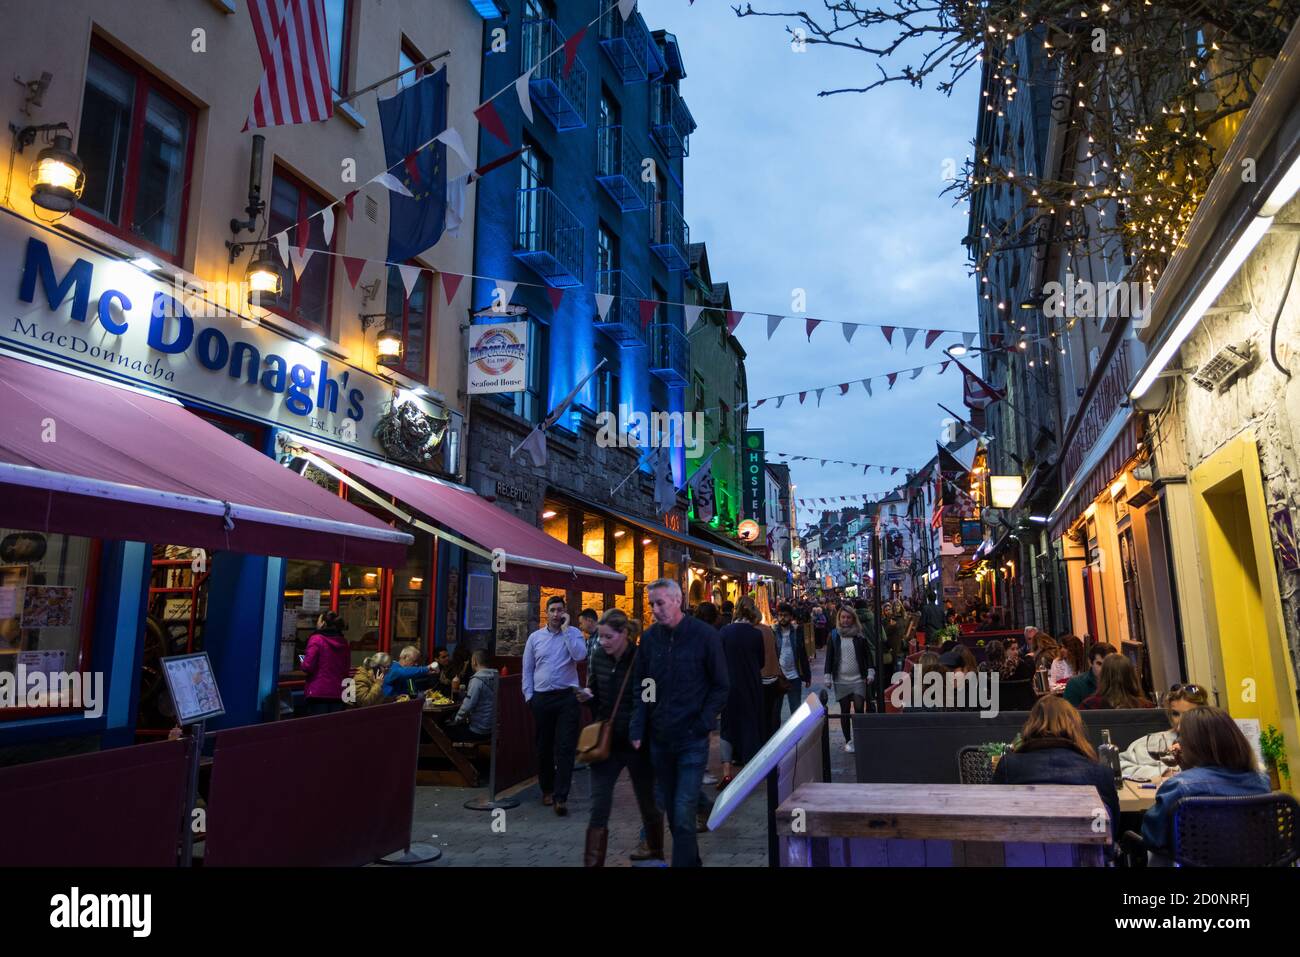 CITTÀ DI GALWAY, IRLANDA - 4 maggio 2018: Le persone che godono di bar e ristoranti su Quay Street nella popolare zona del quartiere Latino della città di Galway di notte. Foto Stock